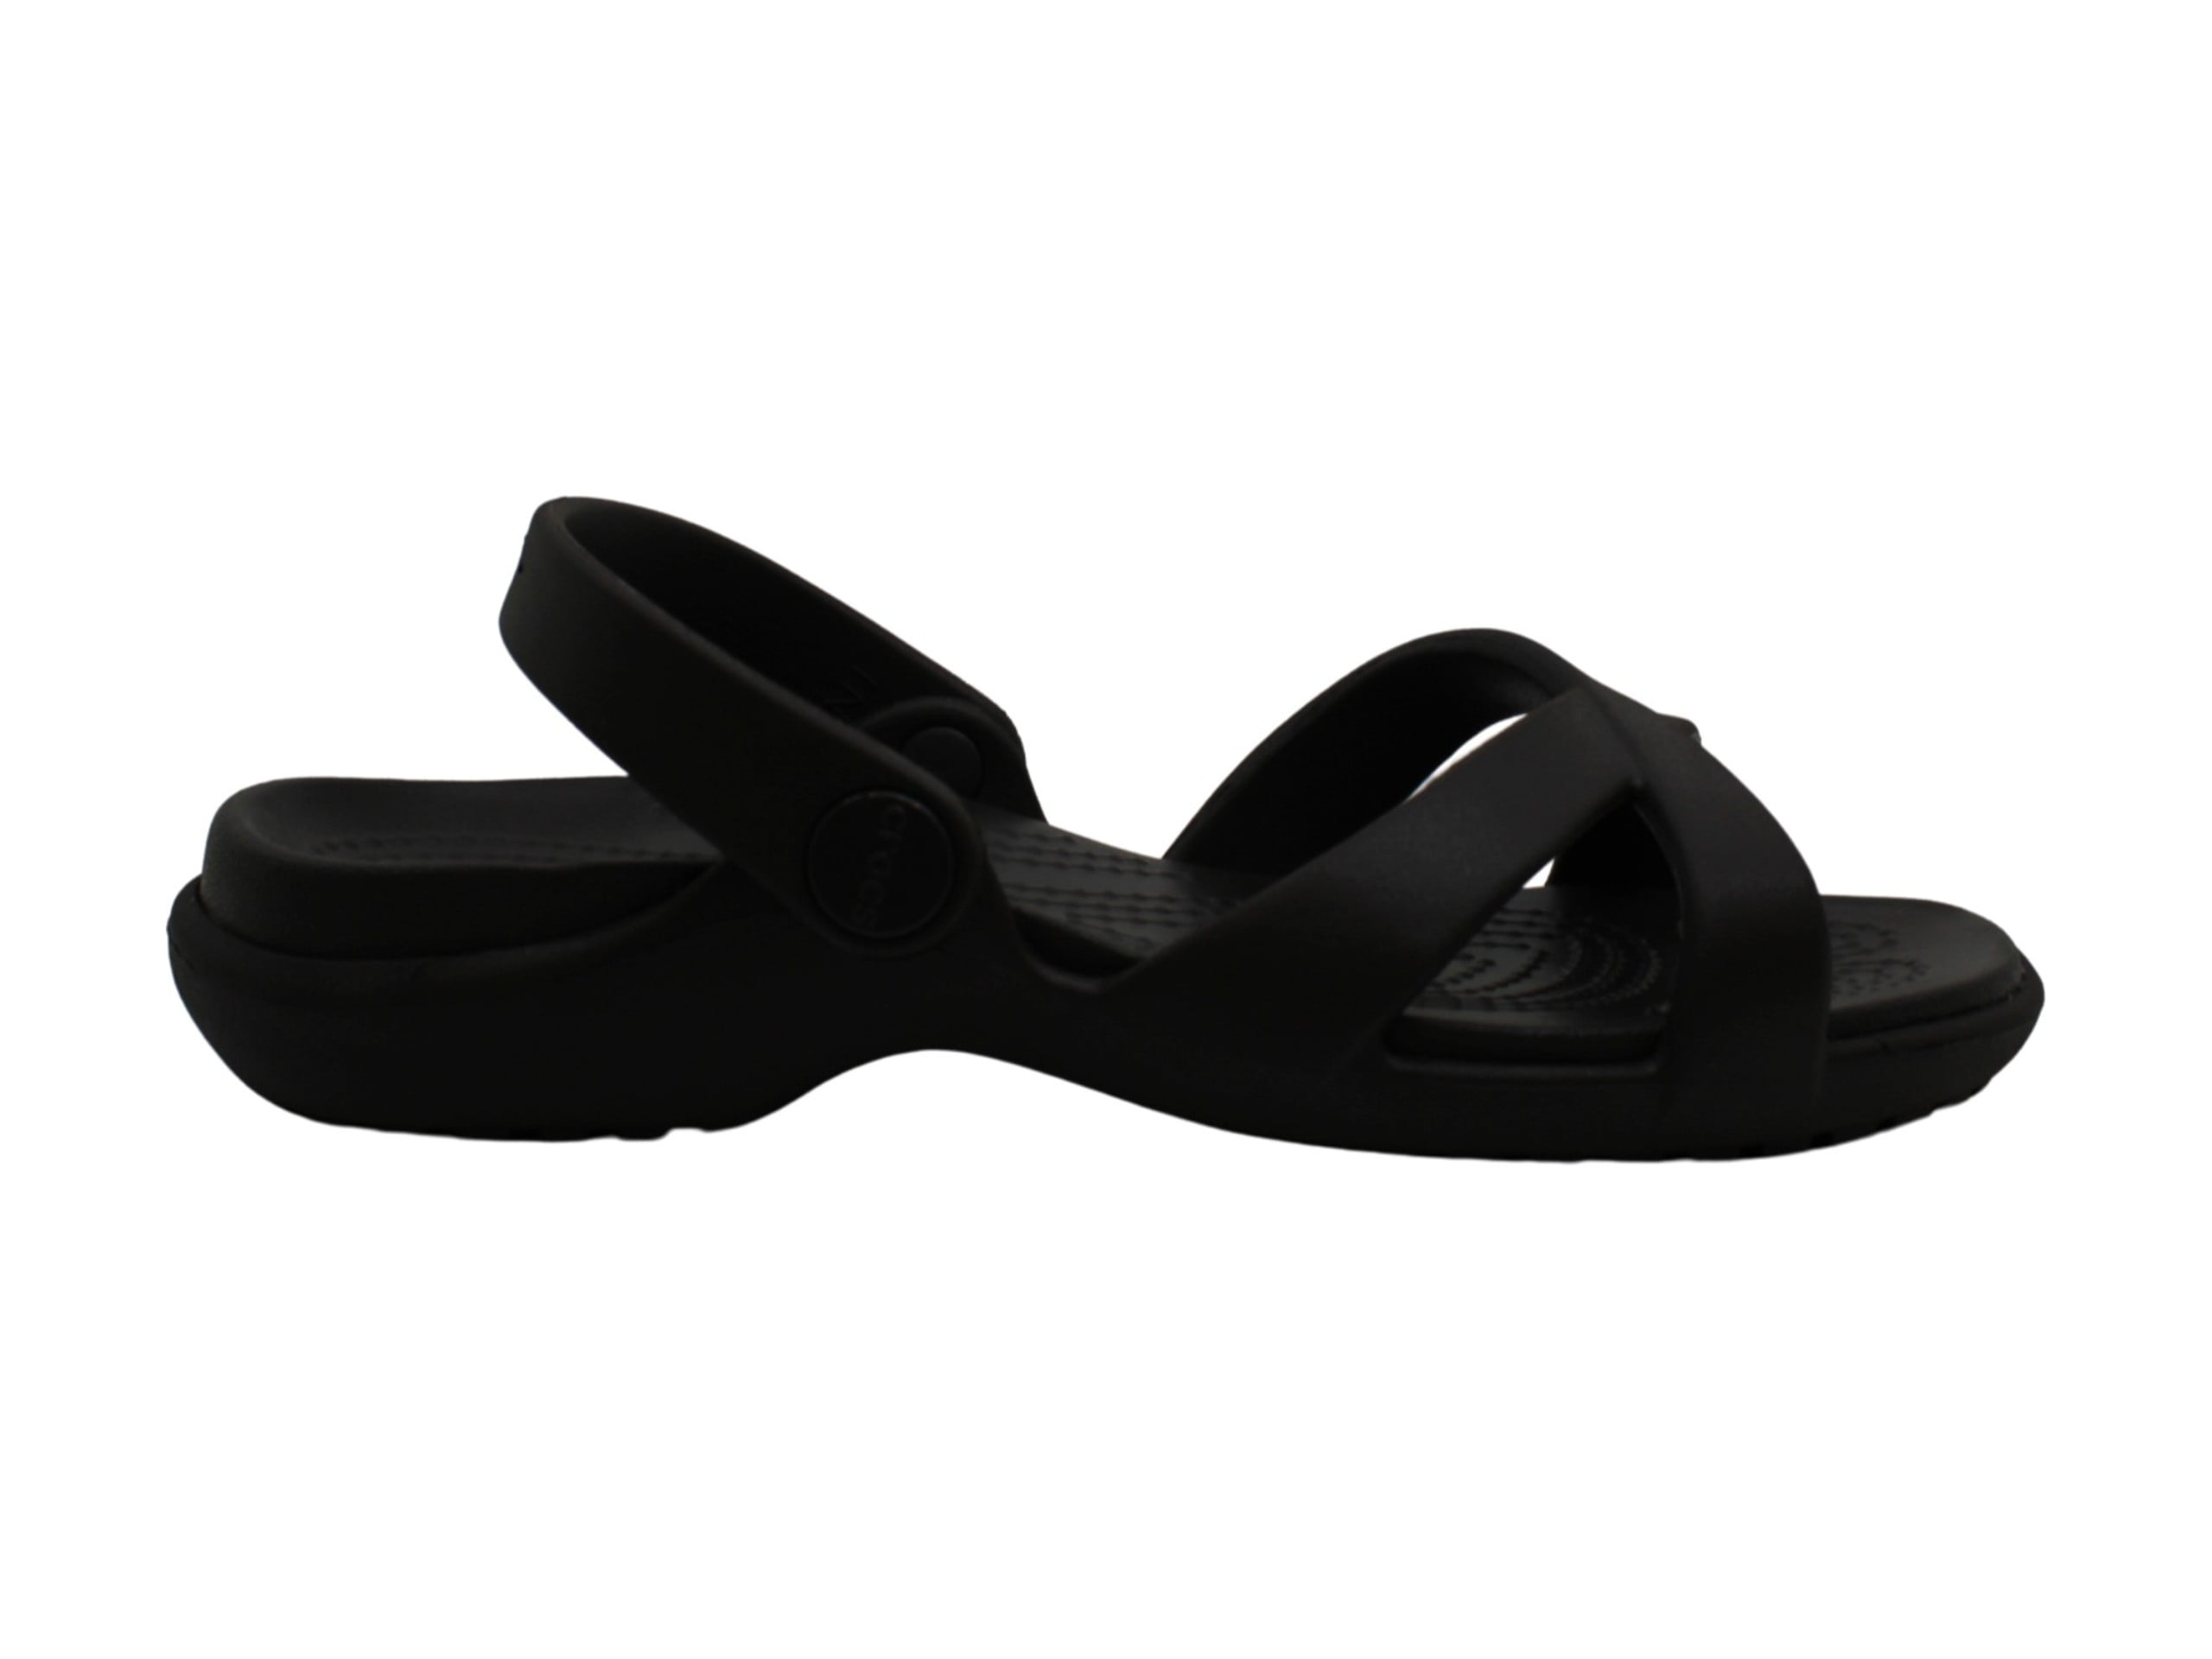 Navy Size 4.0 Crocs Women's Meleen Cross Band Sandal Slide 4 M US Navy 